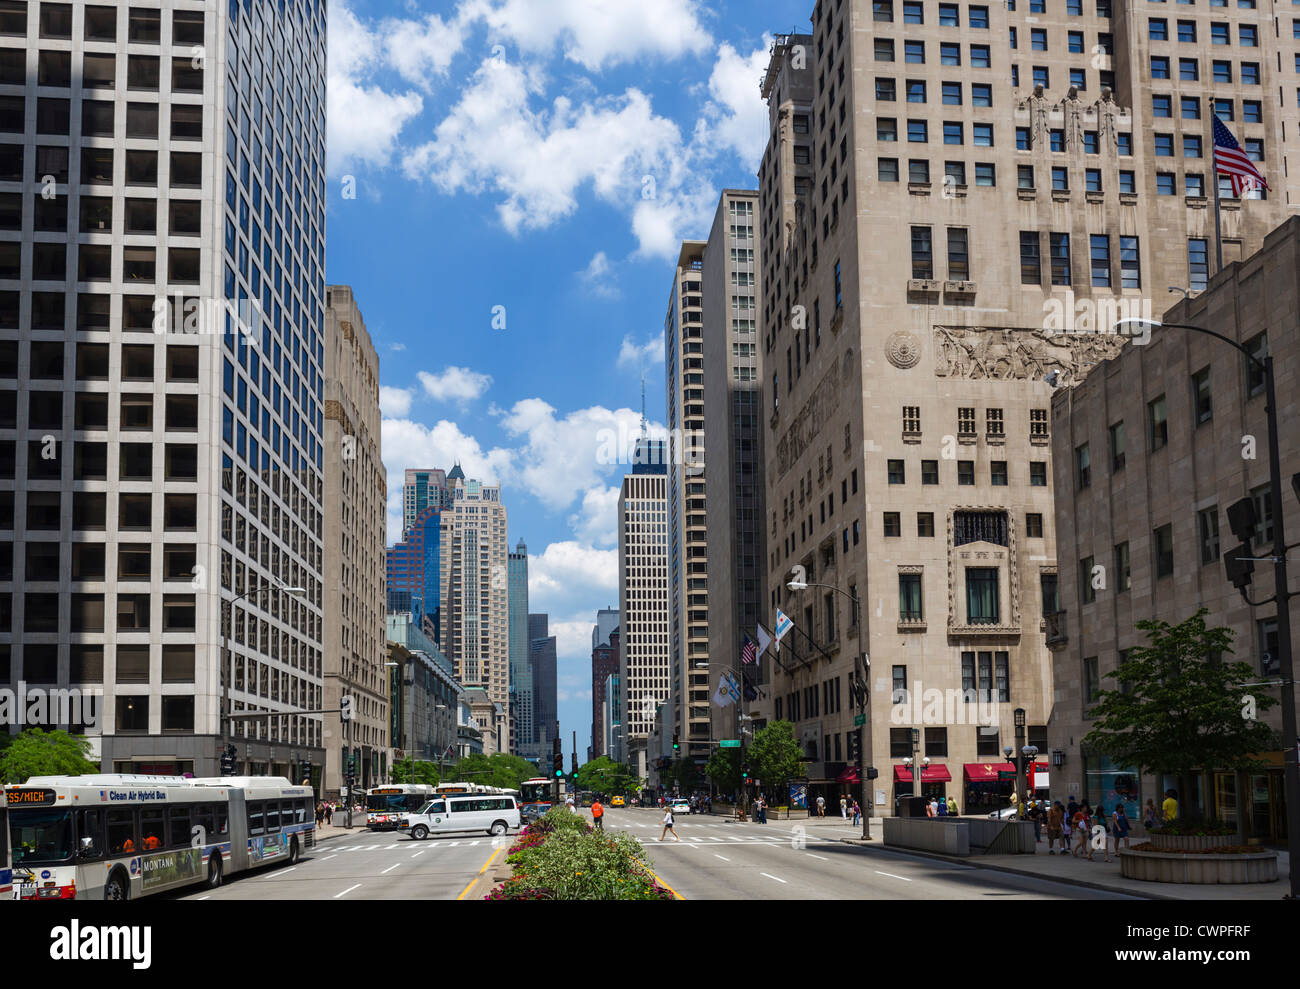 File:The Magnificent Mile, Michigan Avenue, Chicago, Illinois